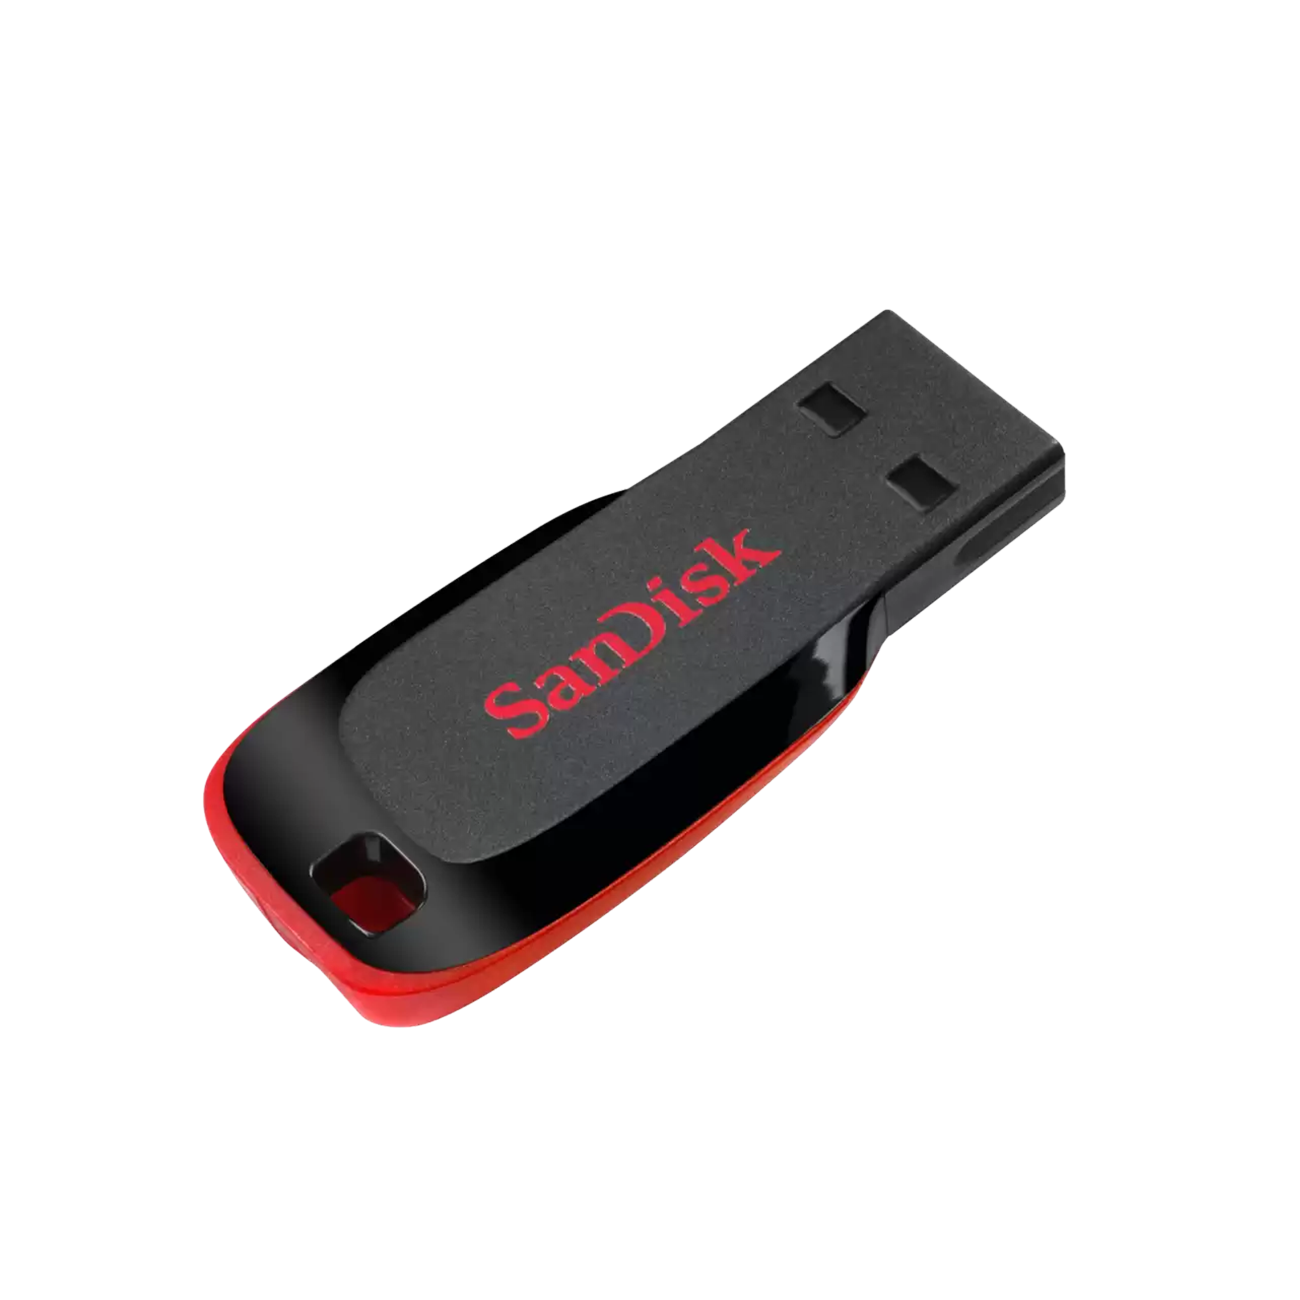 זיכרון נייד SanDisk Cruzer Blade USB 16GB - שנתיים אחריות ע